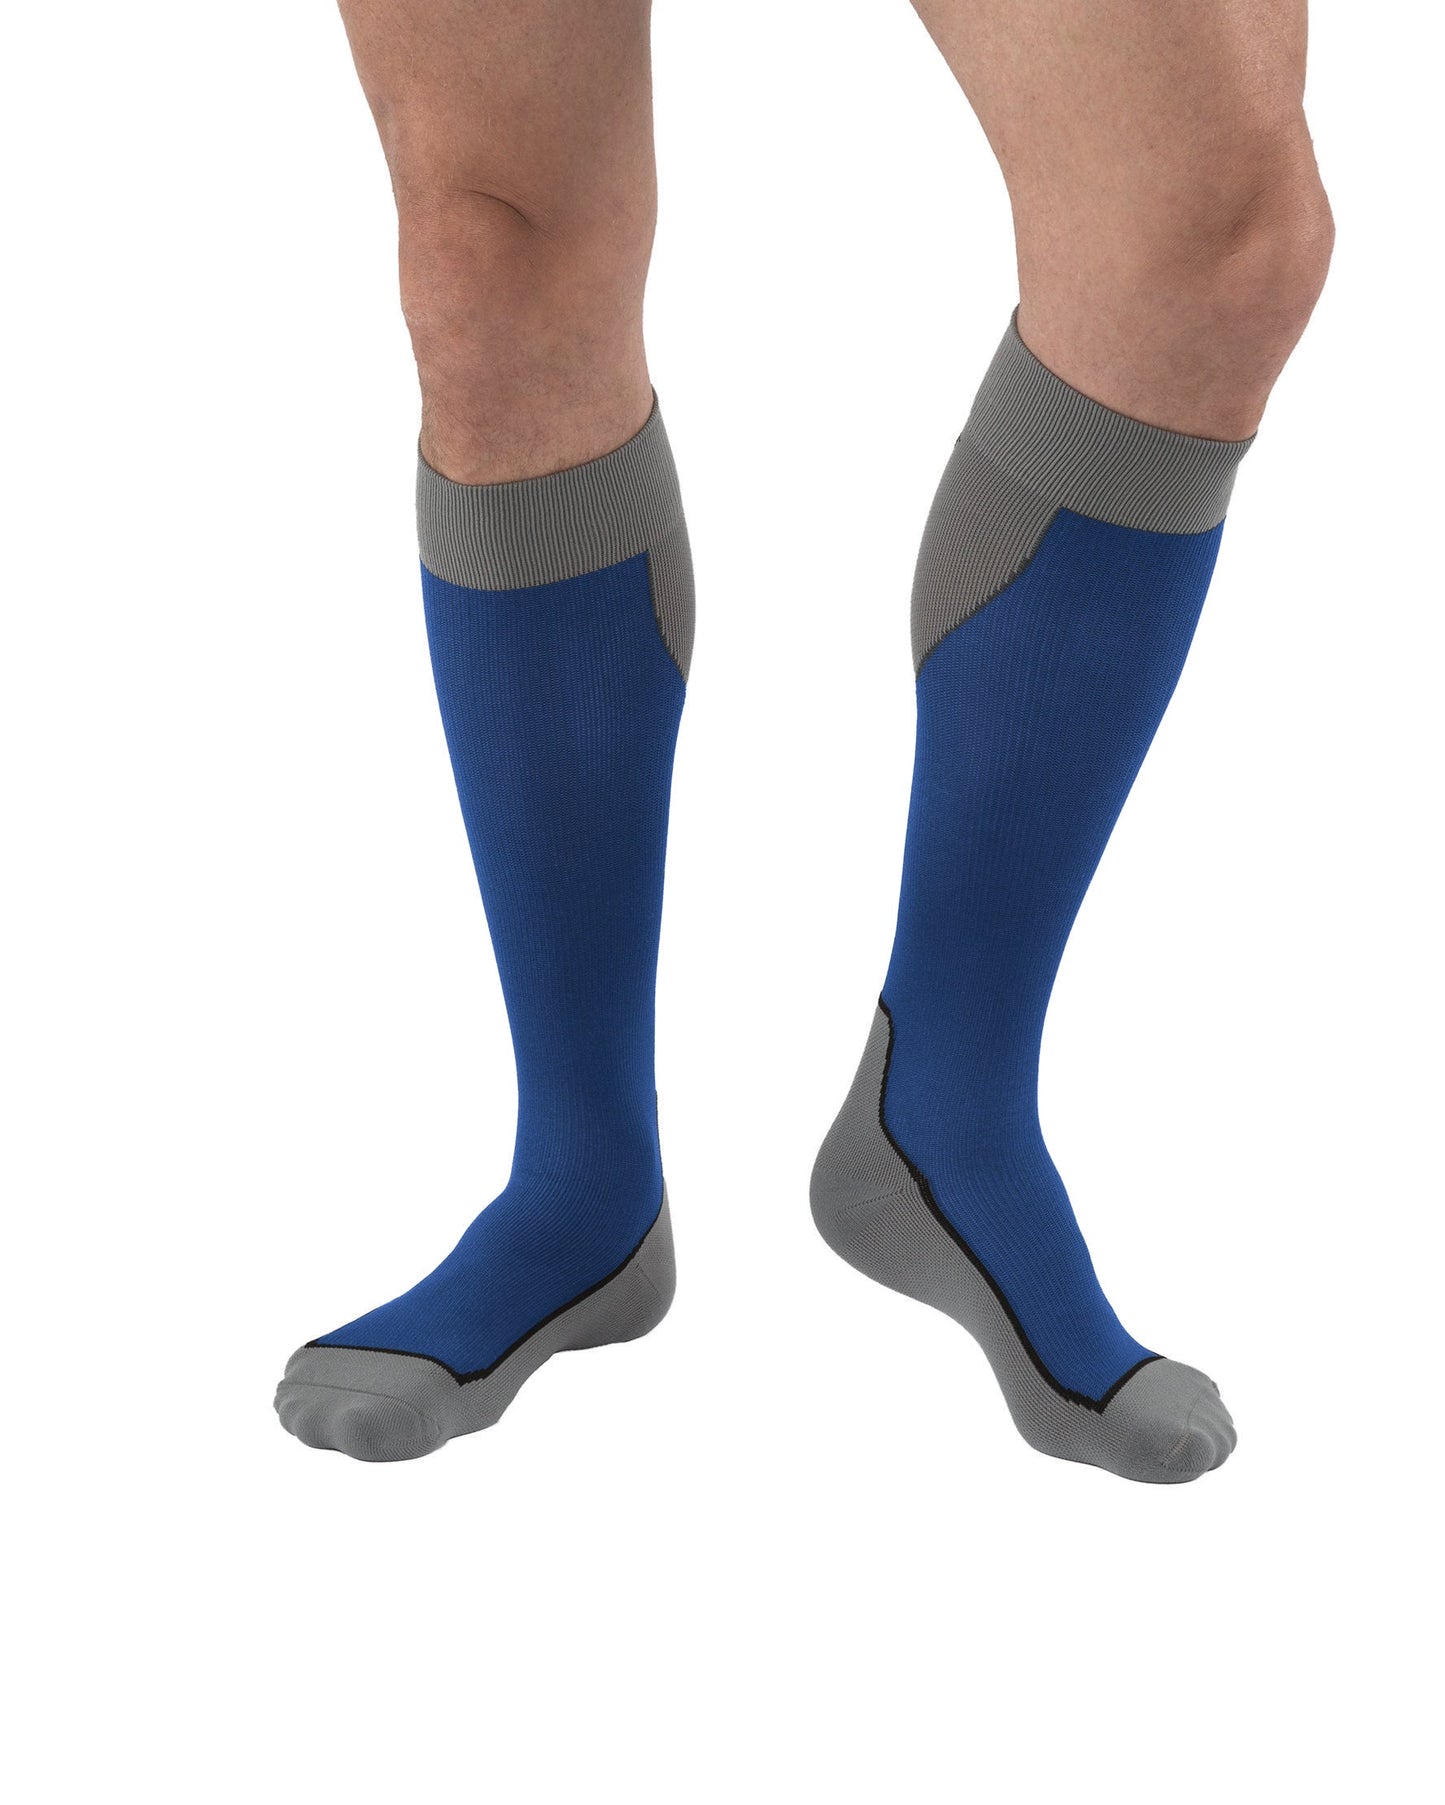 Jobst Sport Compression Socks 20-30 mmHg Knee High Closed Toe